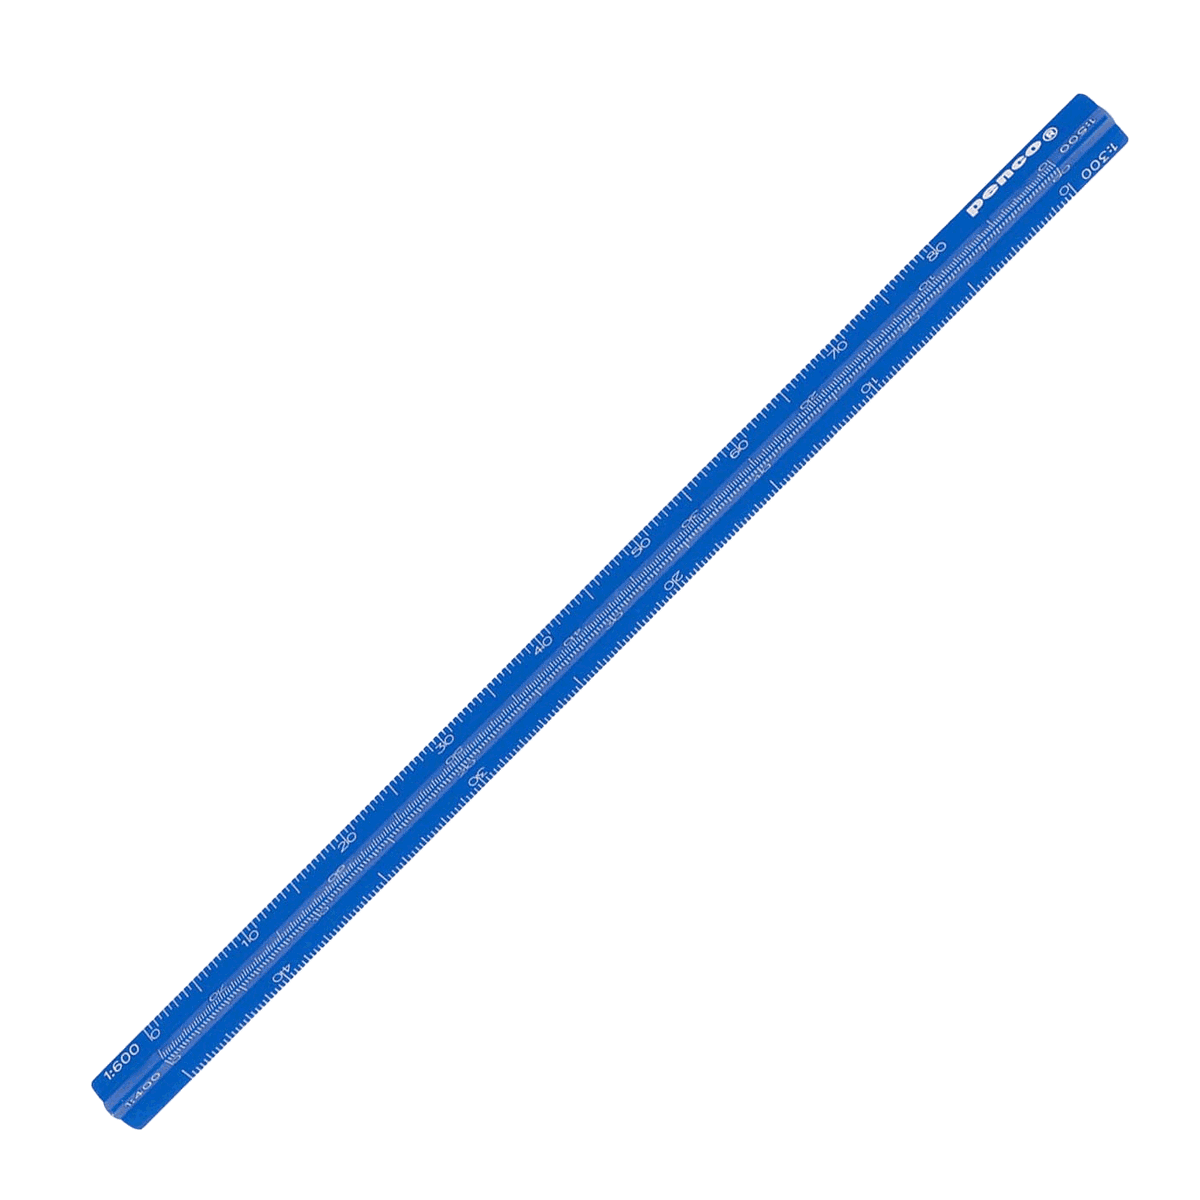 Penco / Dreikant / Maßstab / Drafting Scale Blue / 15cm